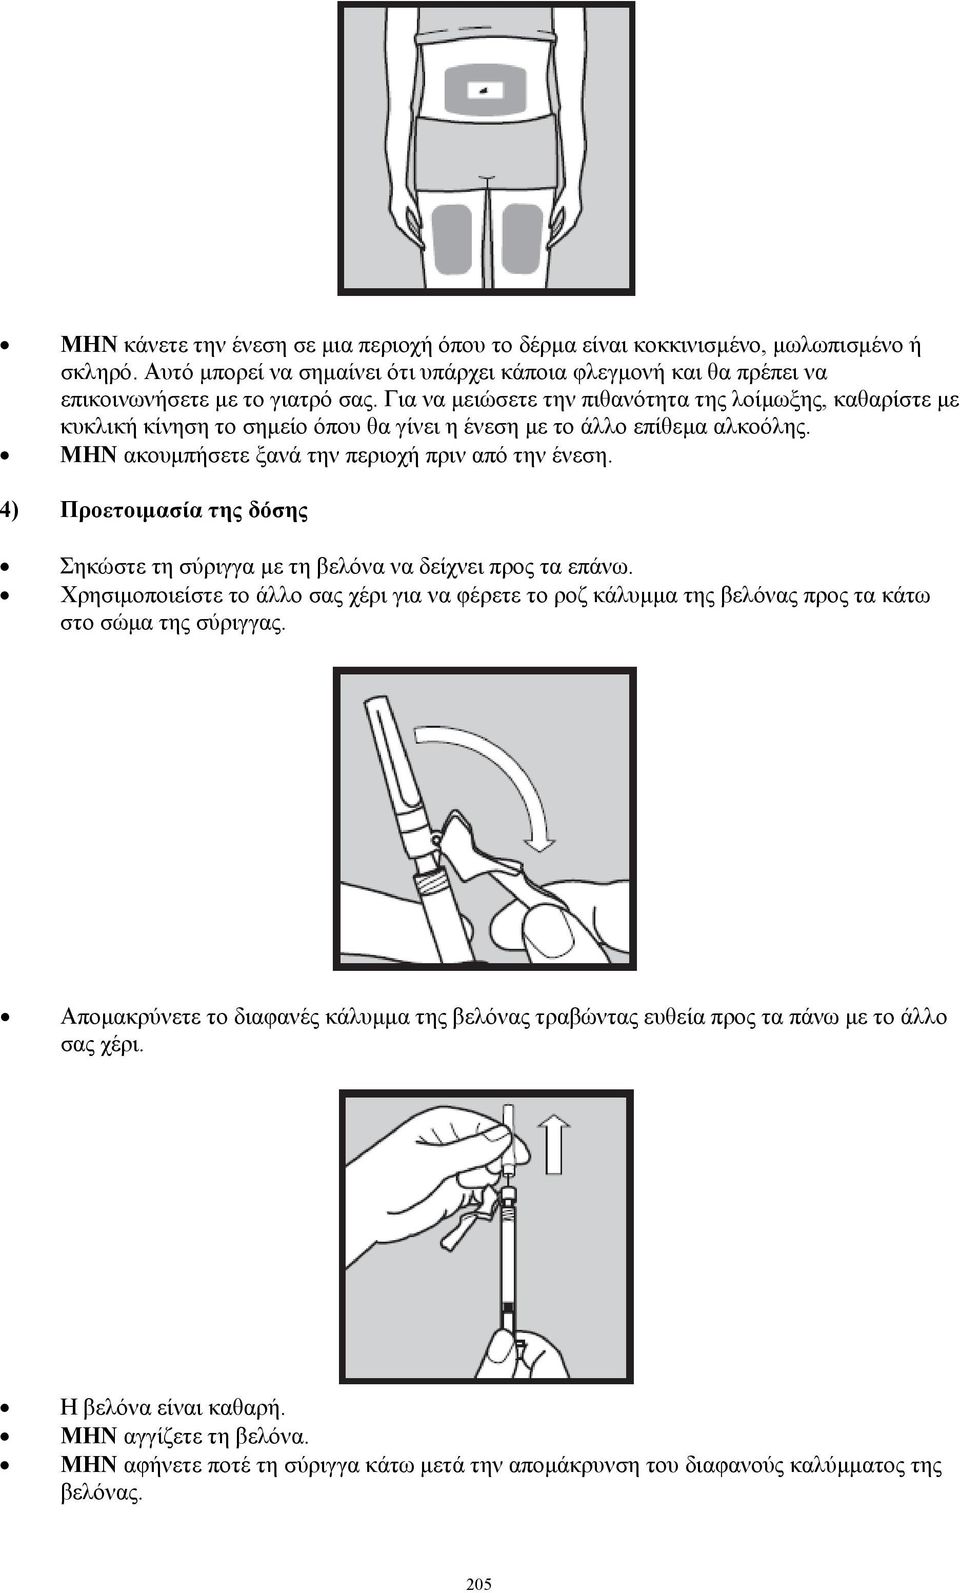 4) Προετοιμασία της δόσης Σηκώστε τη σύριγγα με τη βελόνα να δείχνει προς τα επάνω. Χρησιμοποιείστε το άλλο σας χέρι για να φέρετε το ροζ κάλυμμα της βελόνας προς τα κάτω στο σώμα της σύριγγας.